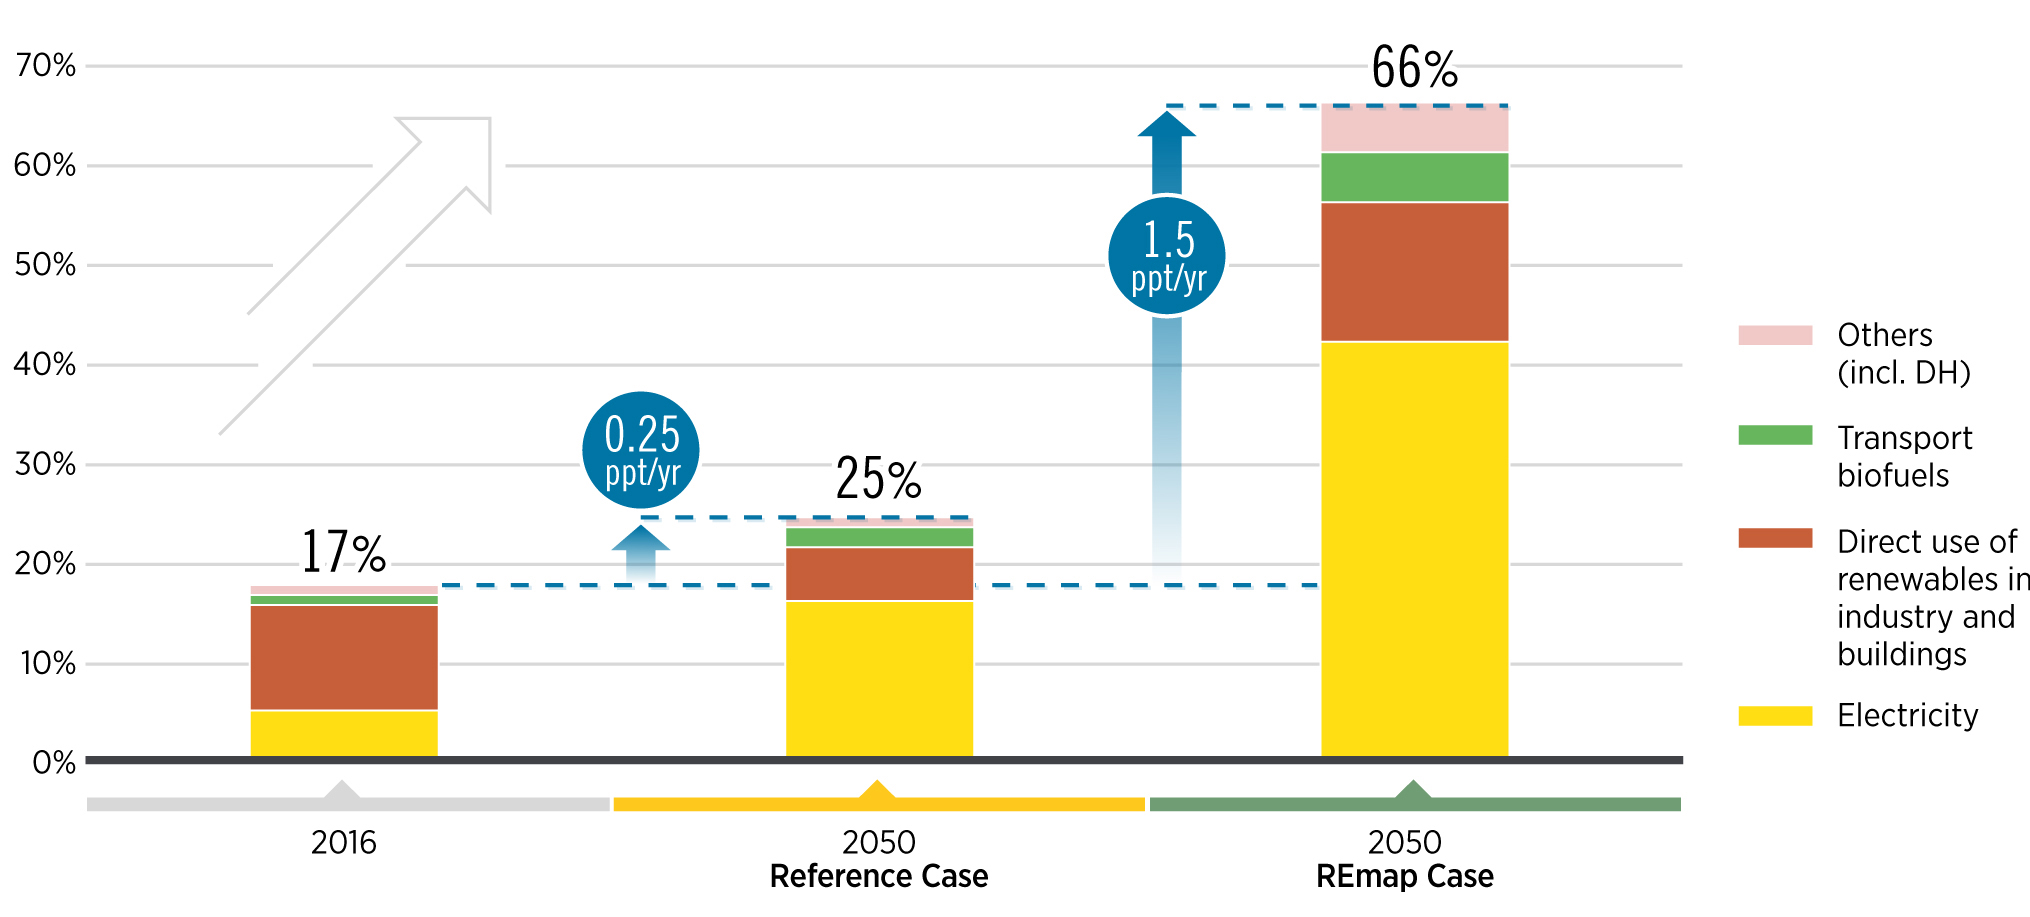 Рис. 8. Рост доли ВИЭ в общем потреблении конечной энергии,% и п.п. / с: первичный сценарий и сокращение в случае корригированного сценария «REmap», с учетом вклада по секторам, 2010-2050. Источник: IRENA - отчет «Global energy transformation: A roadmap to 2050 (2019 edition)», апрель 2019.